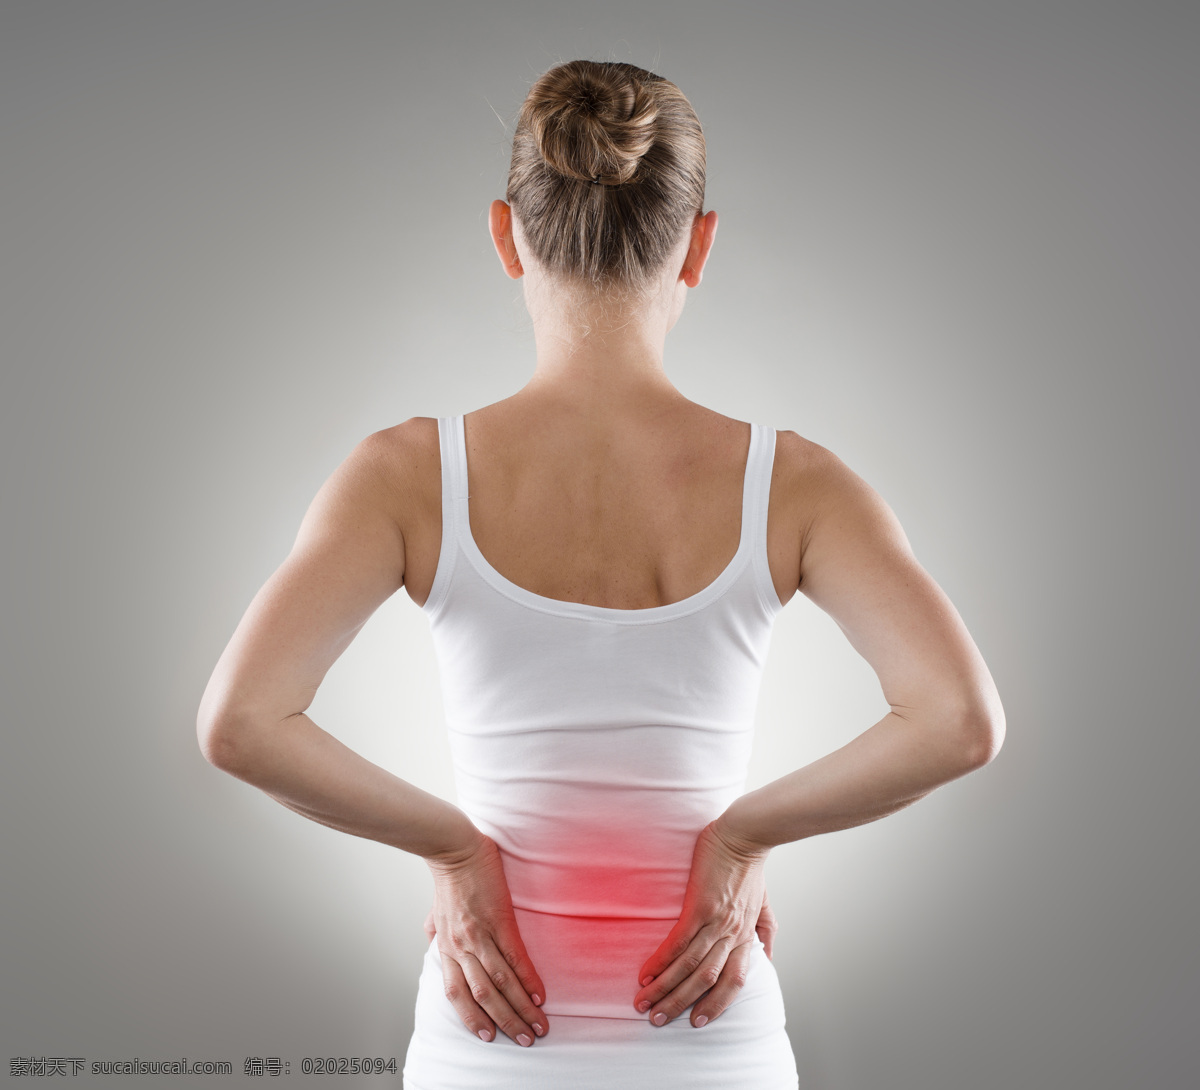 腰痛 女人 腰痛的女人 受伤 骨折 身体红肿 医疗护理 生病 生理疾病 受伤人物 美女 现代科技